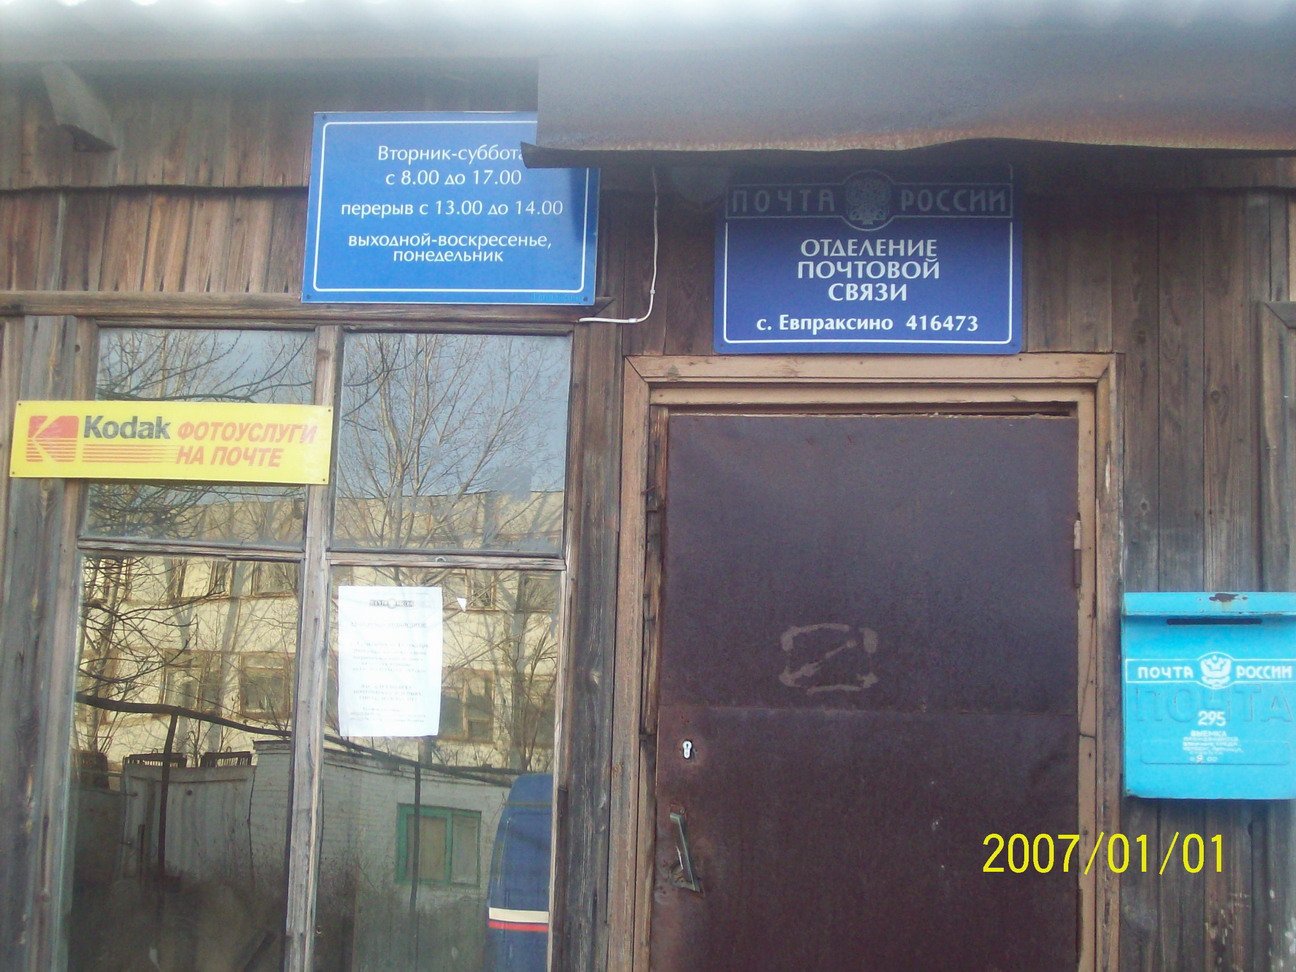 ВХОД, отделение почтовой связи 416473, Астраханская обл., Приволжский р-он, Евпраксино